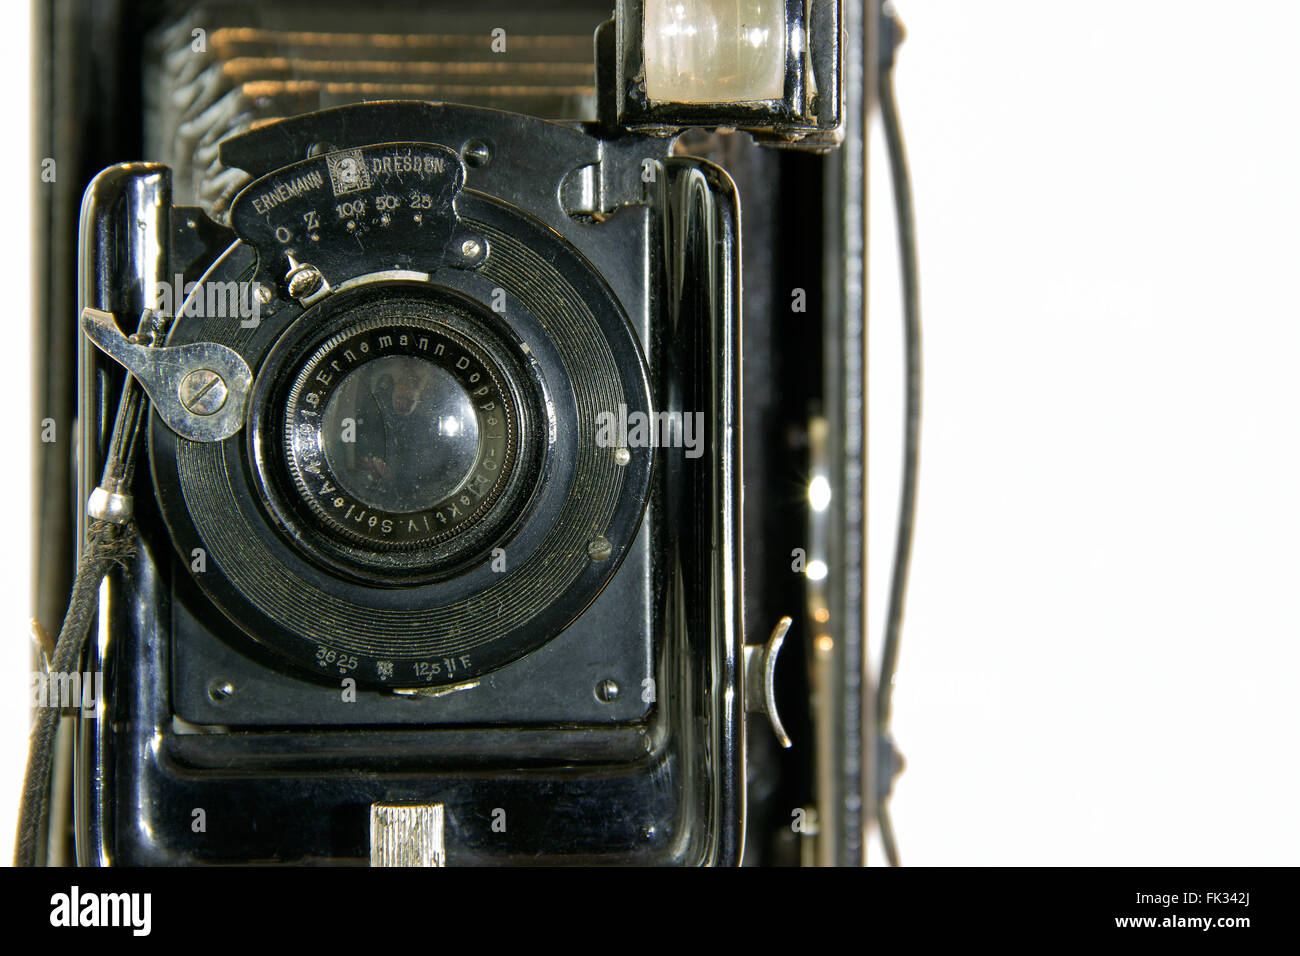 Die Ernemann HEAG ich Falten Plattenkamera (9x12cm) aus dem Jahr 1912 Stockfoto